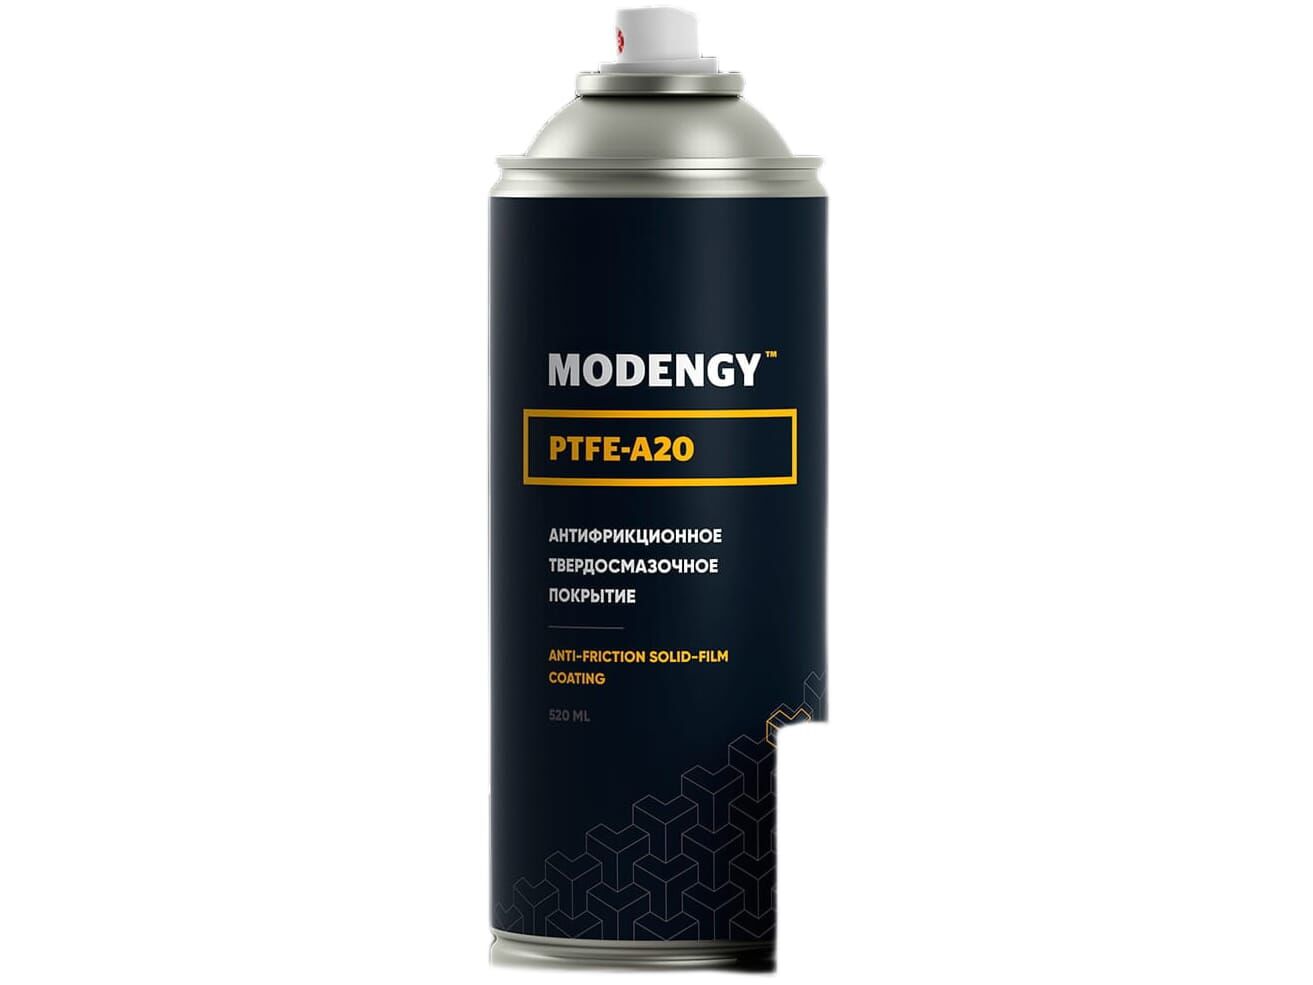 Антифрикционное твердосмазочное покрытие Modengy PTFE-A20 spray, 520мл